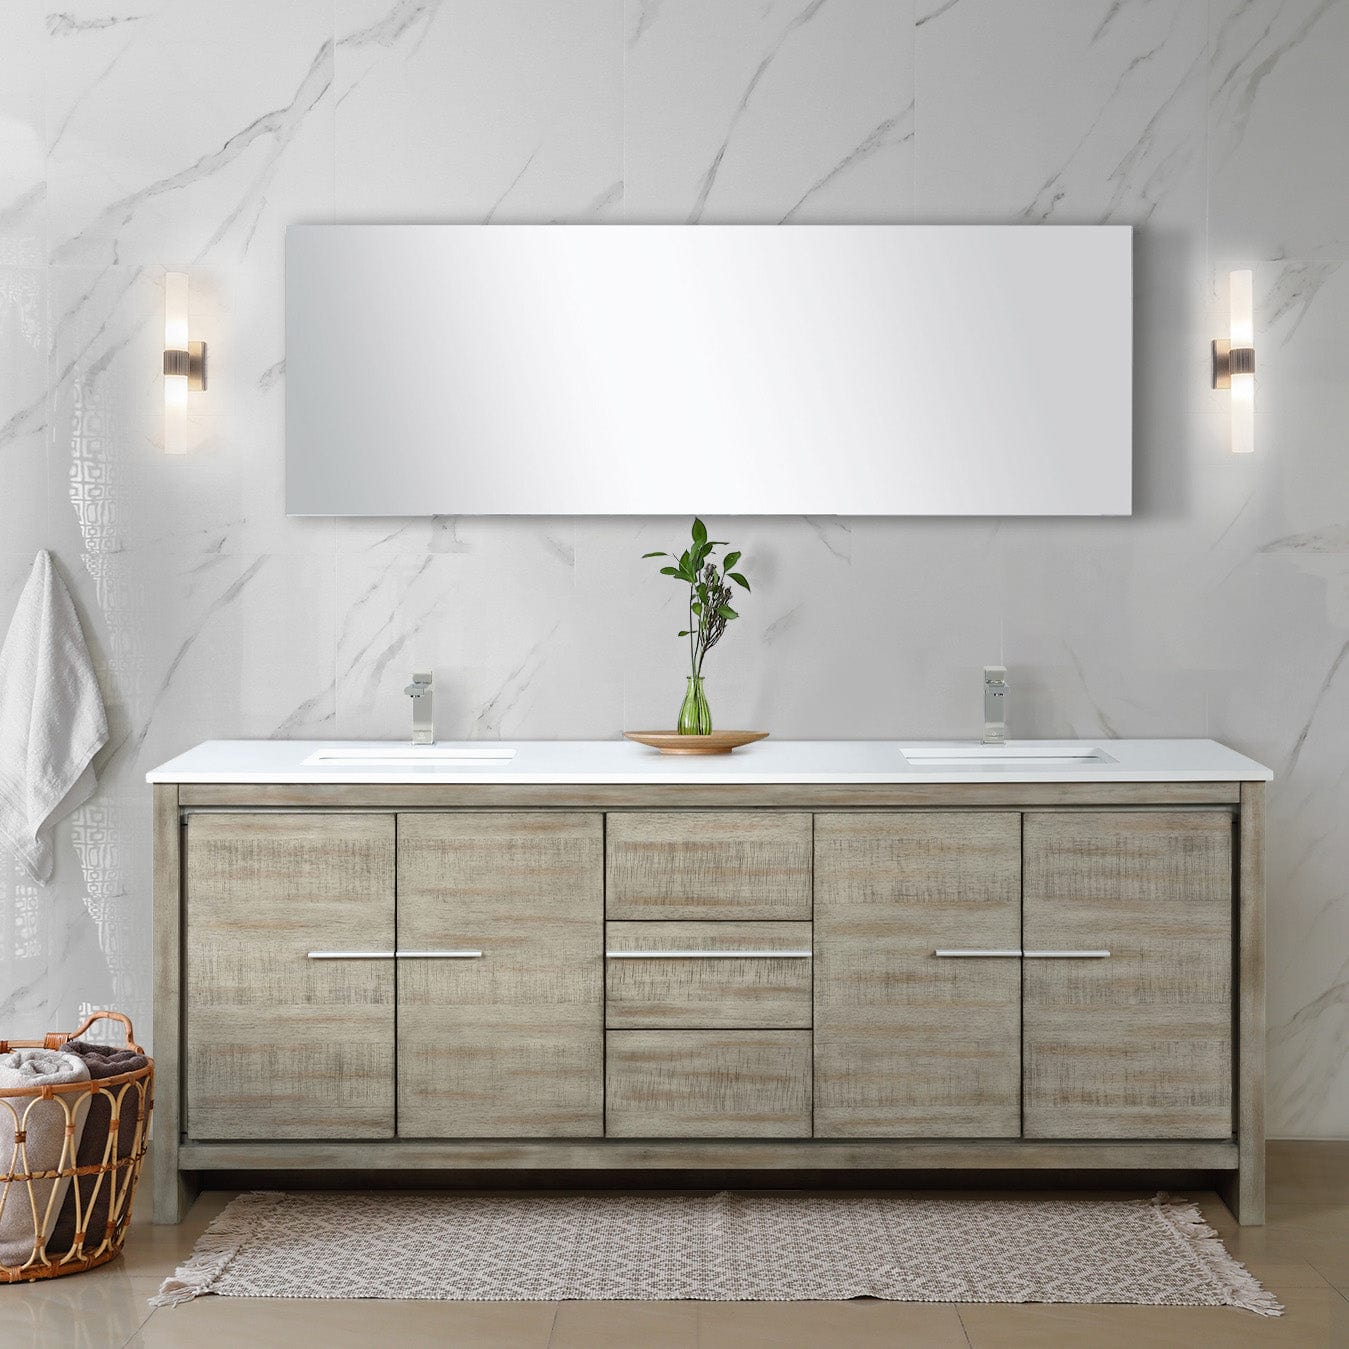 Bell + Modern Bathroom Vanity 80